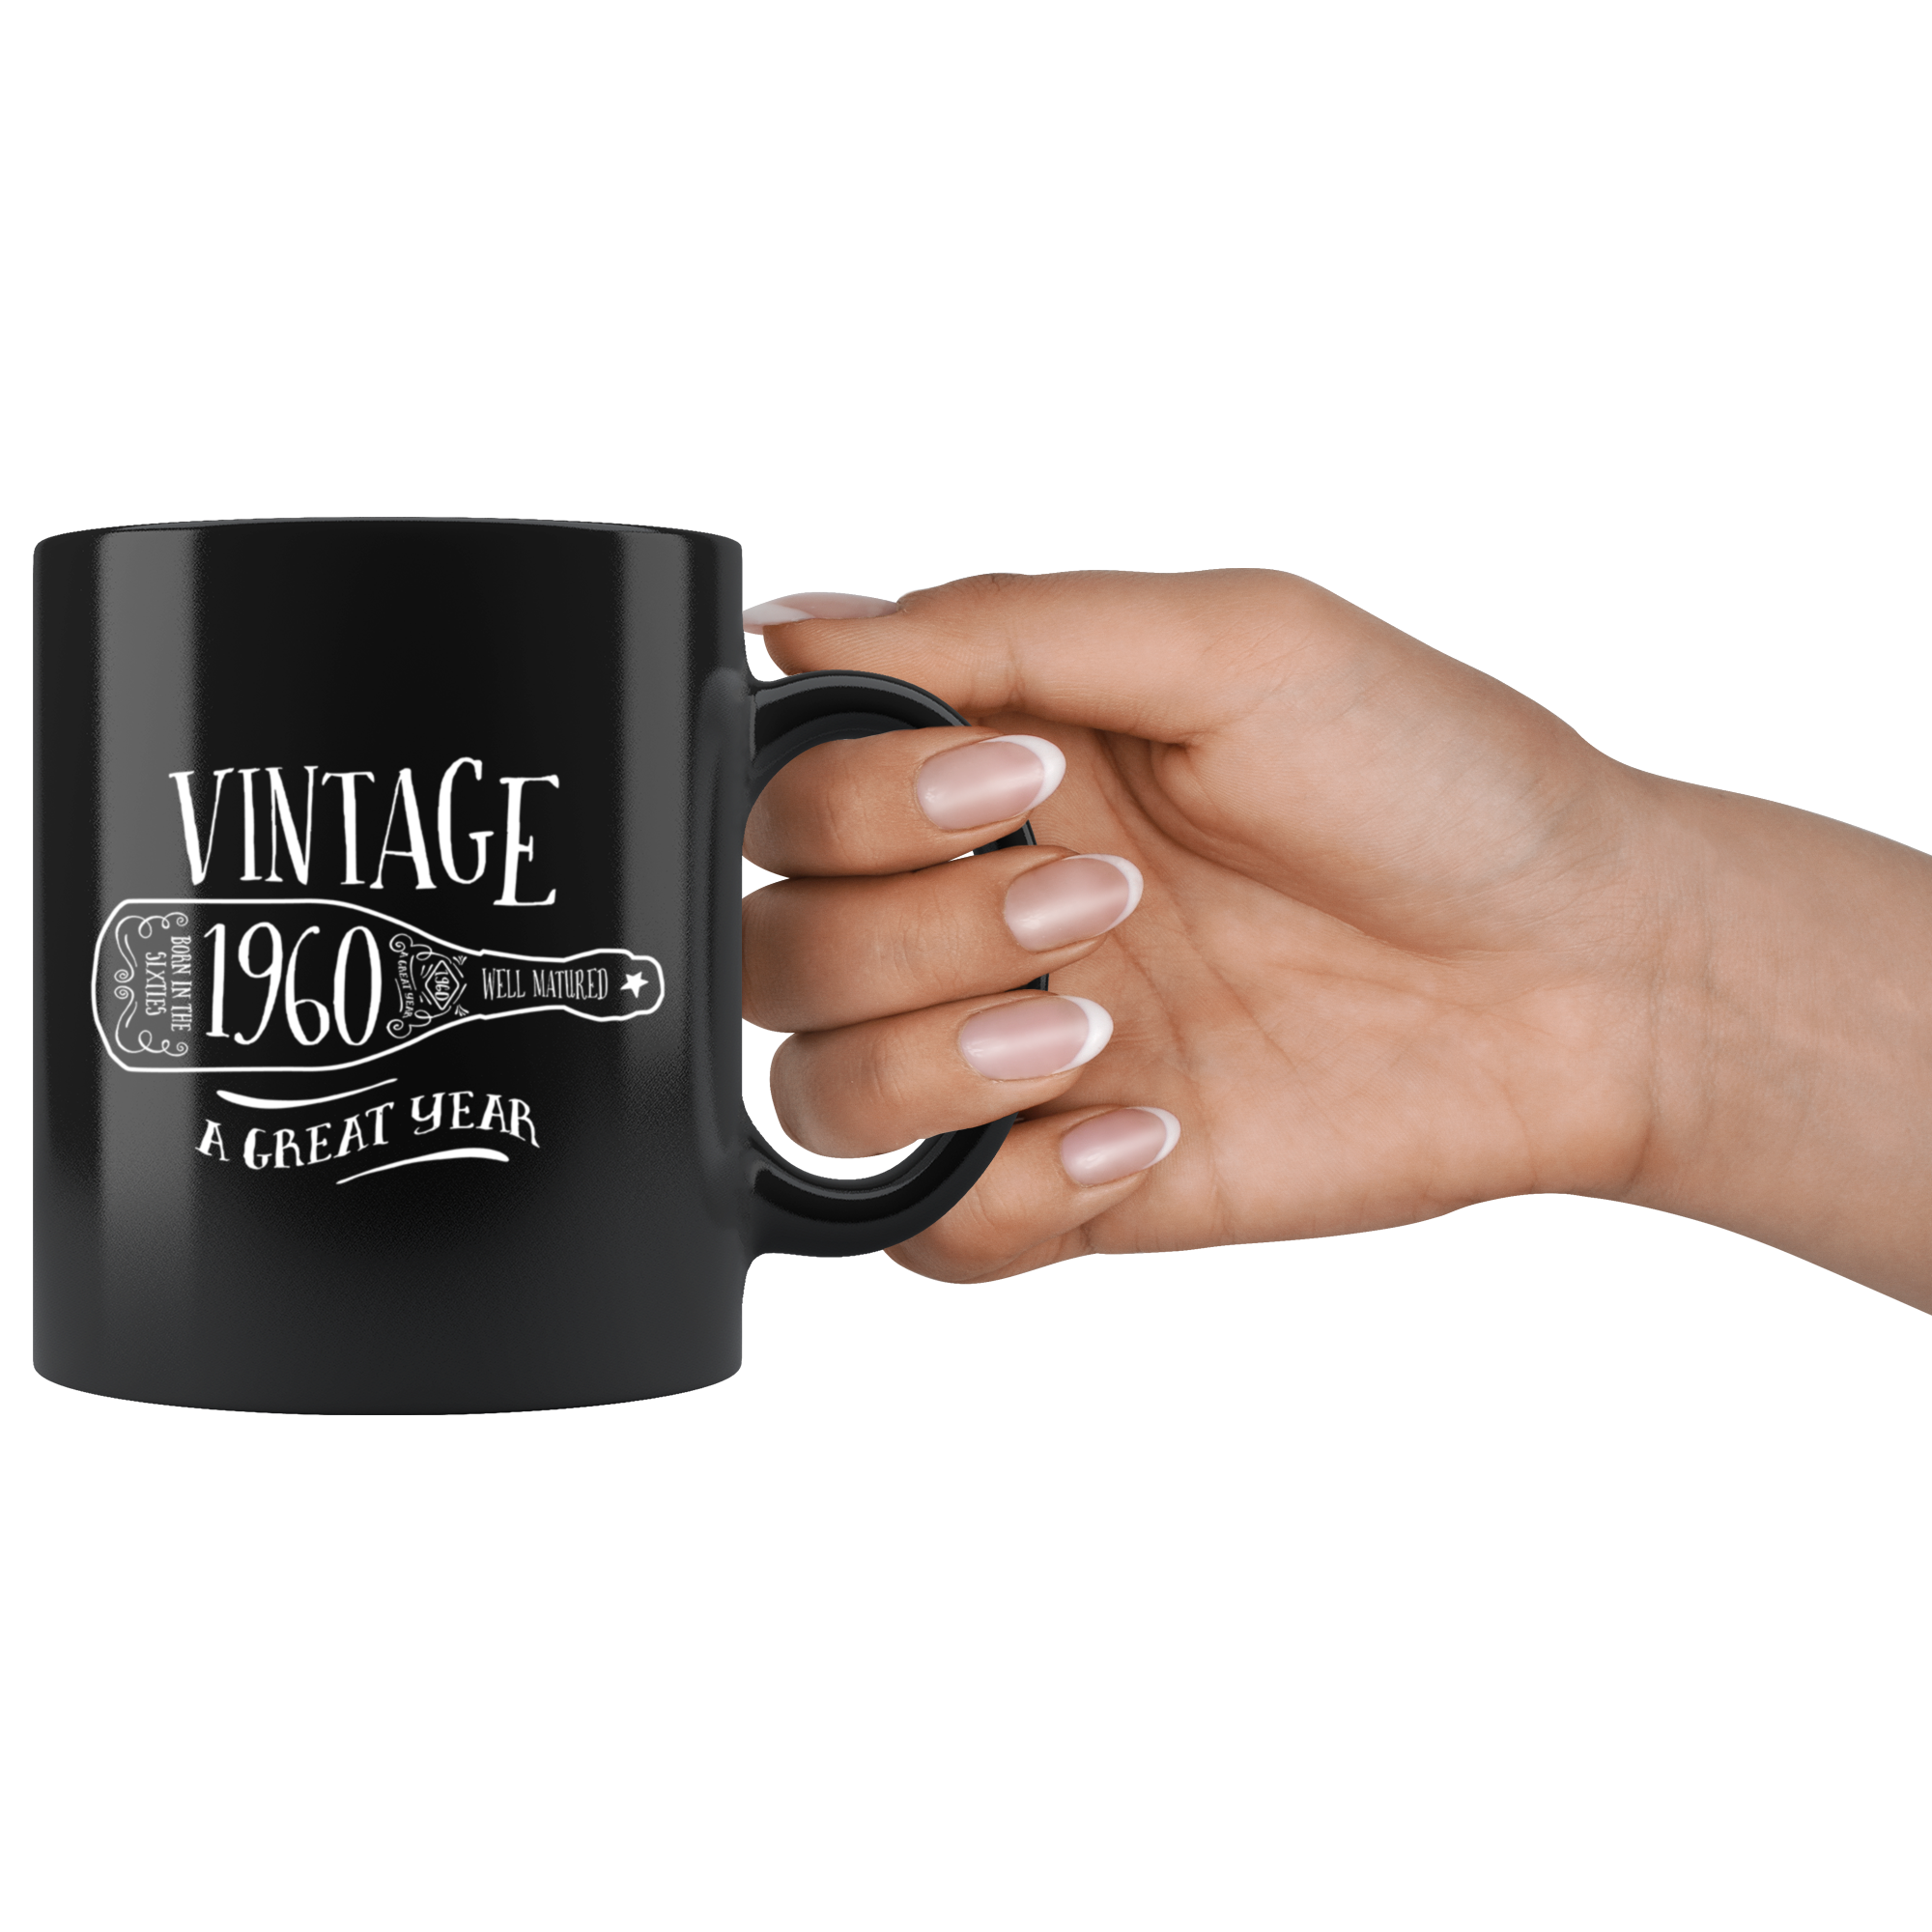 Vintage 1960 - Black Mug